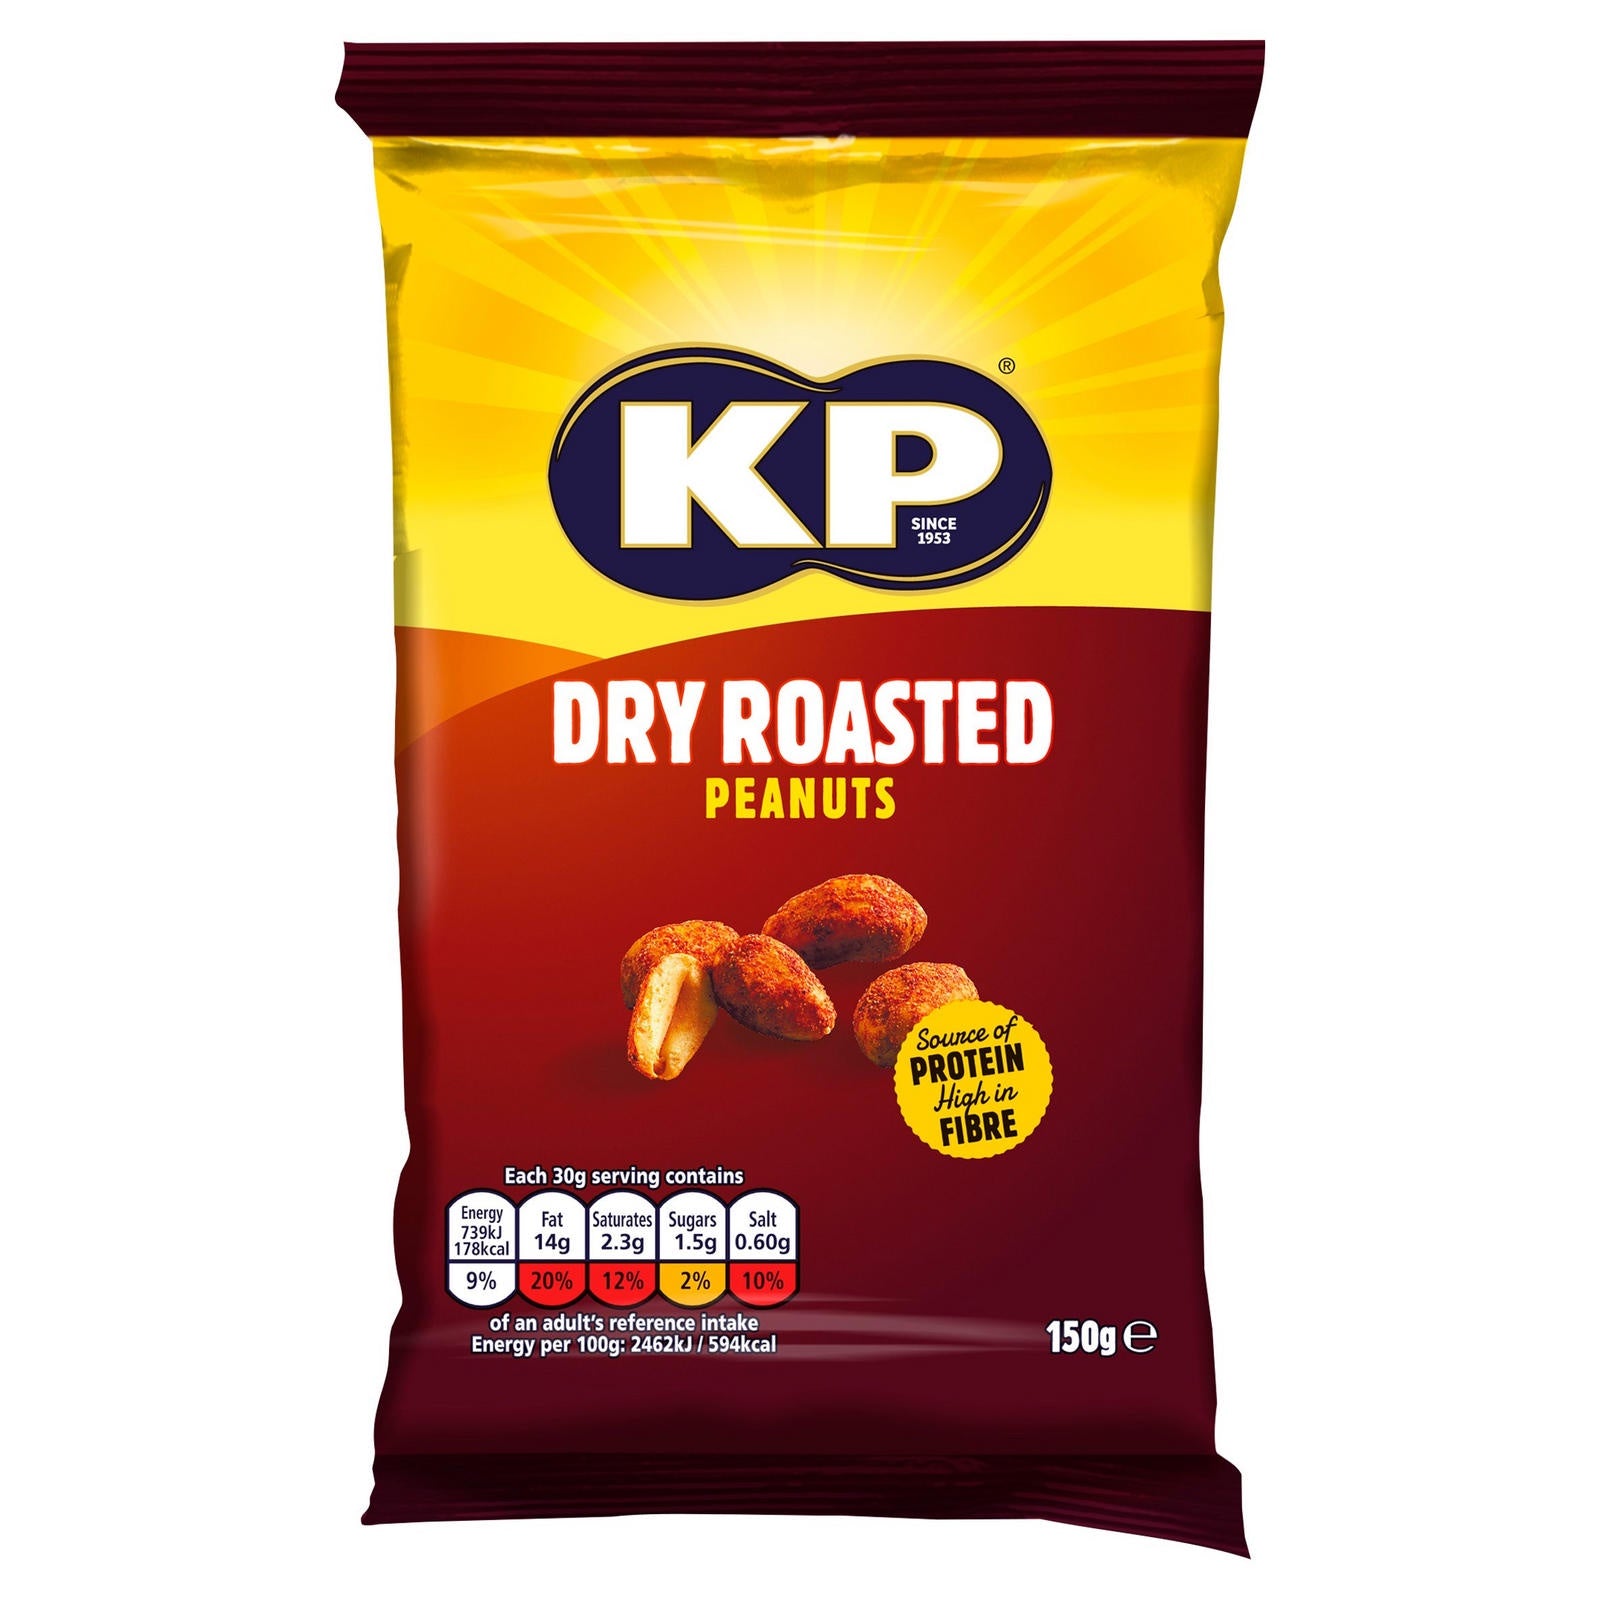 KP Dry Roasted Peanuts 150g*